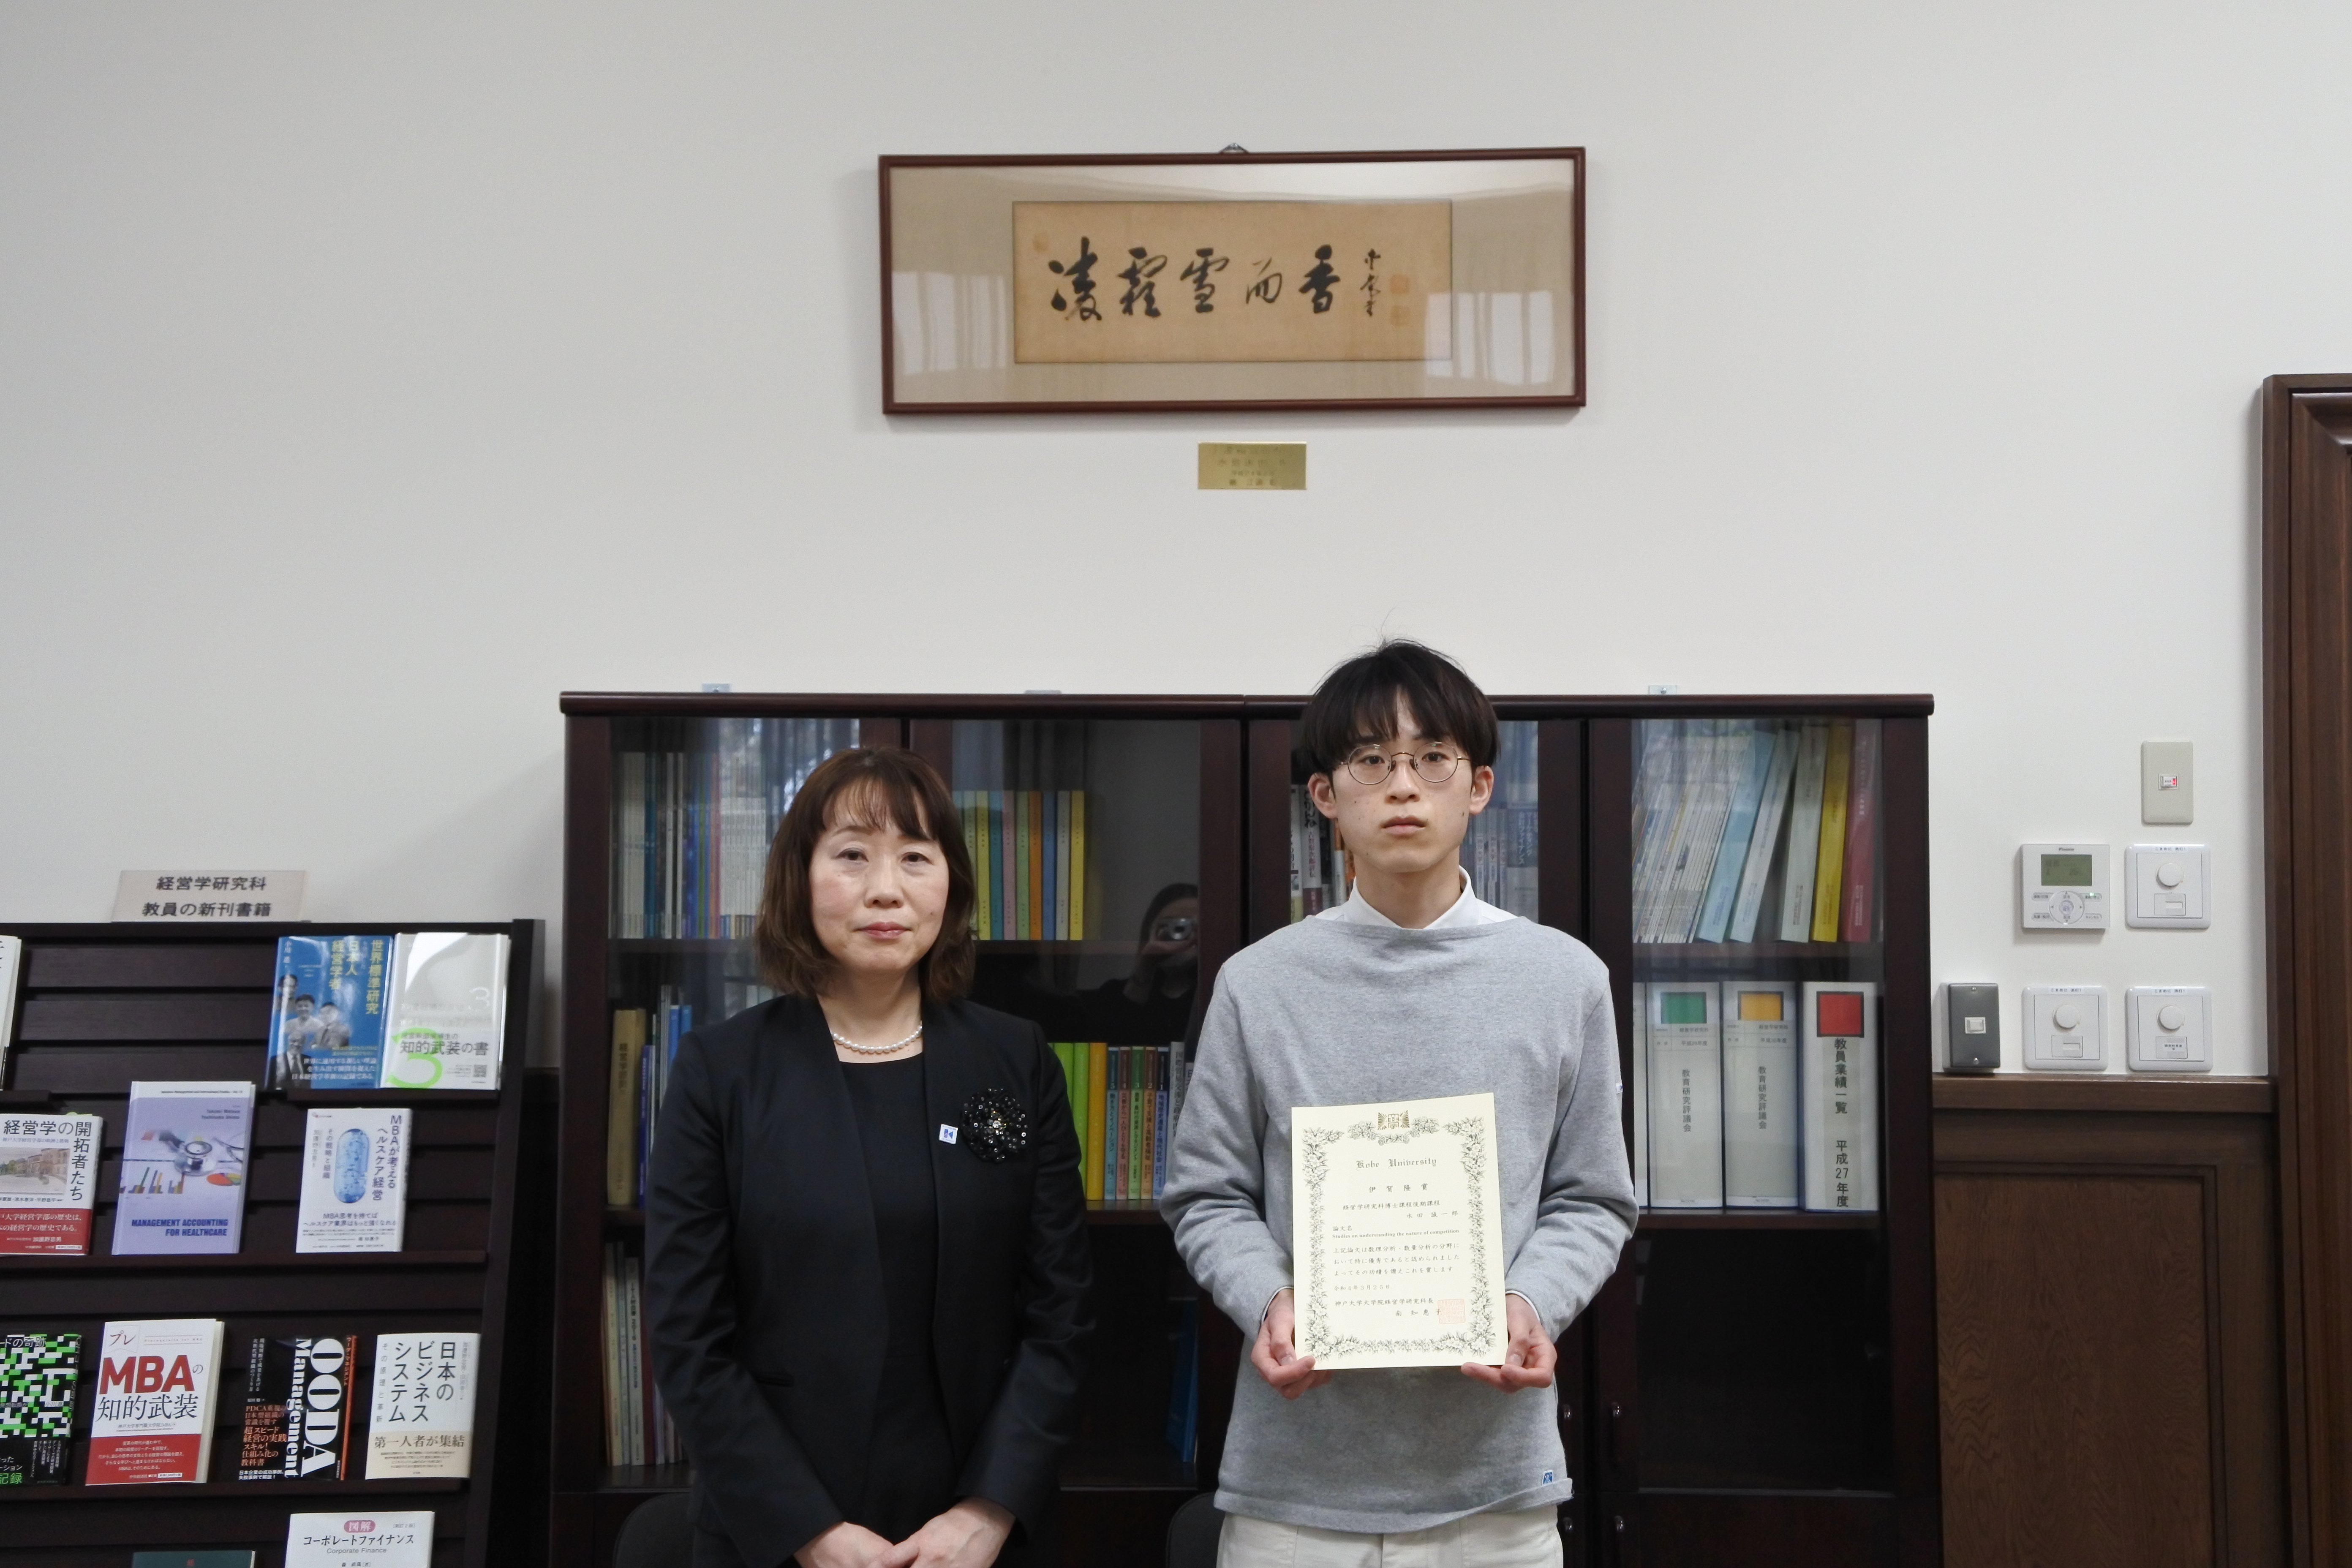 左から、南 知惠子経営学研究科長、水田誠一郎さん